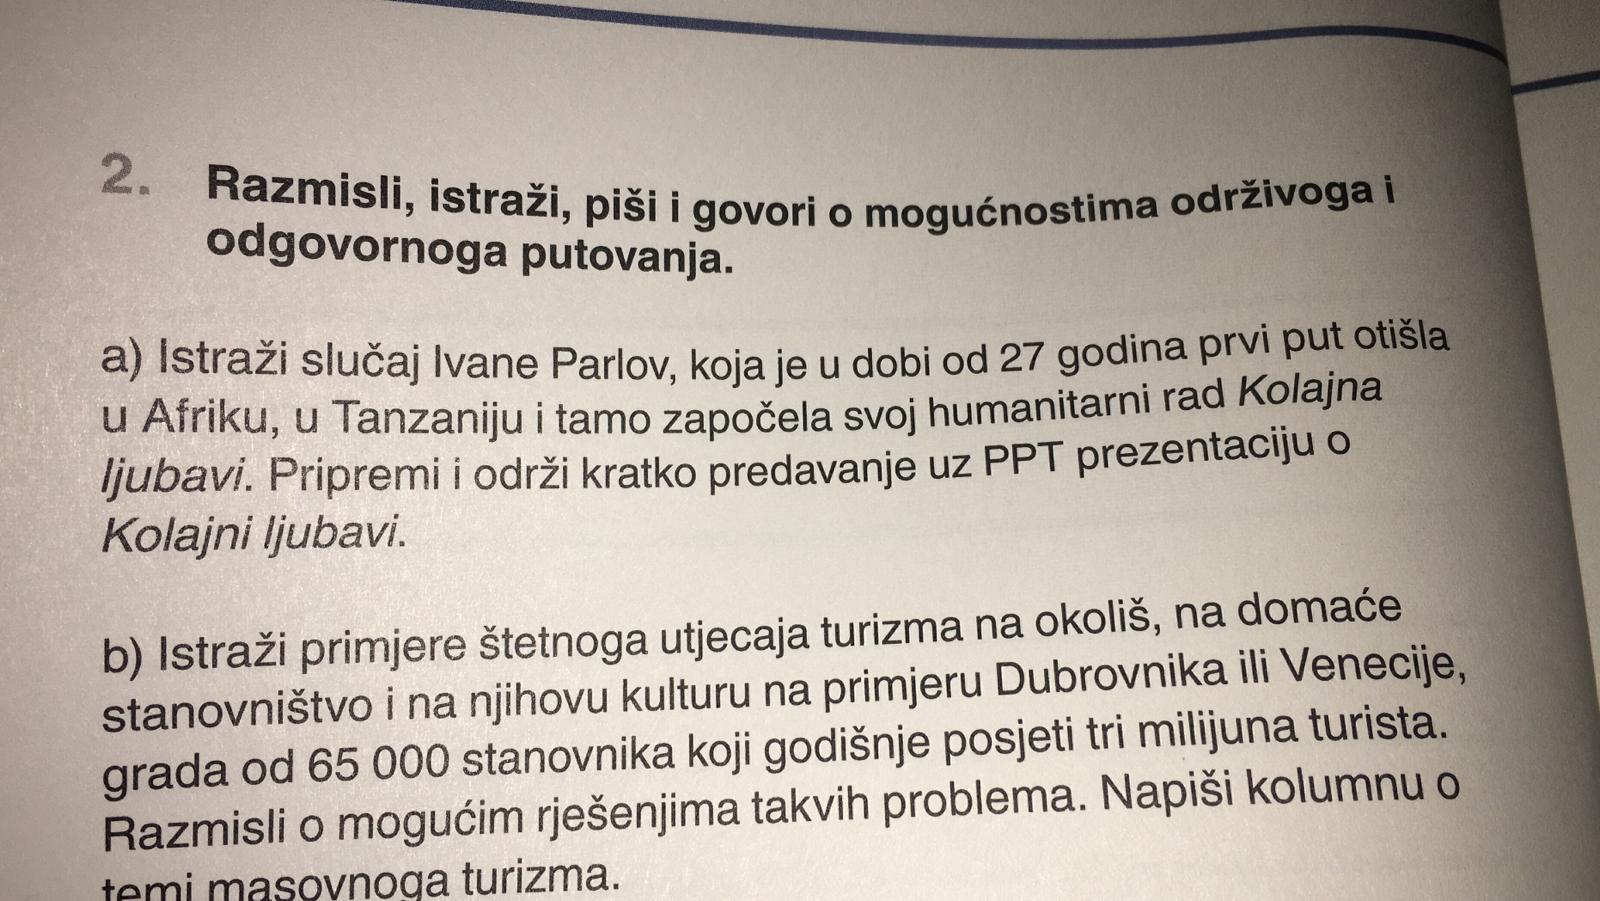 Kolajna ljubavi in the book for 3rd grade secondary school